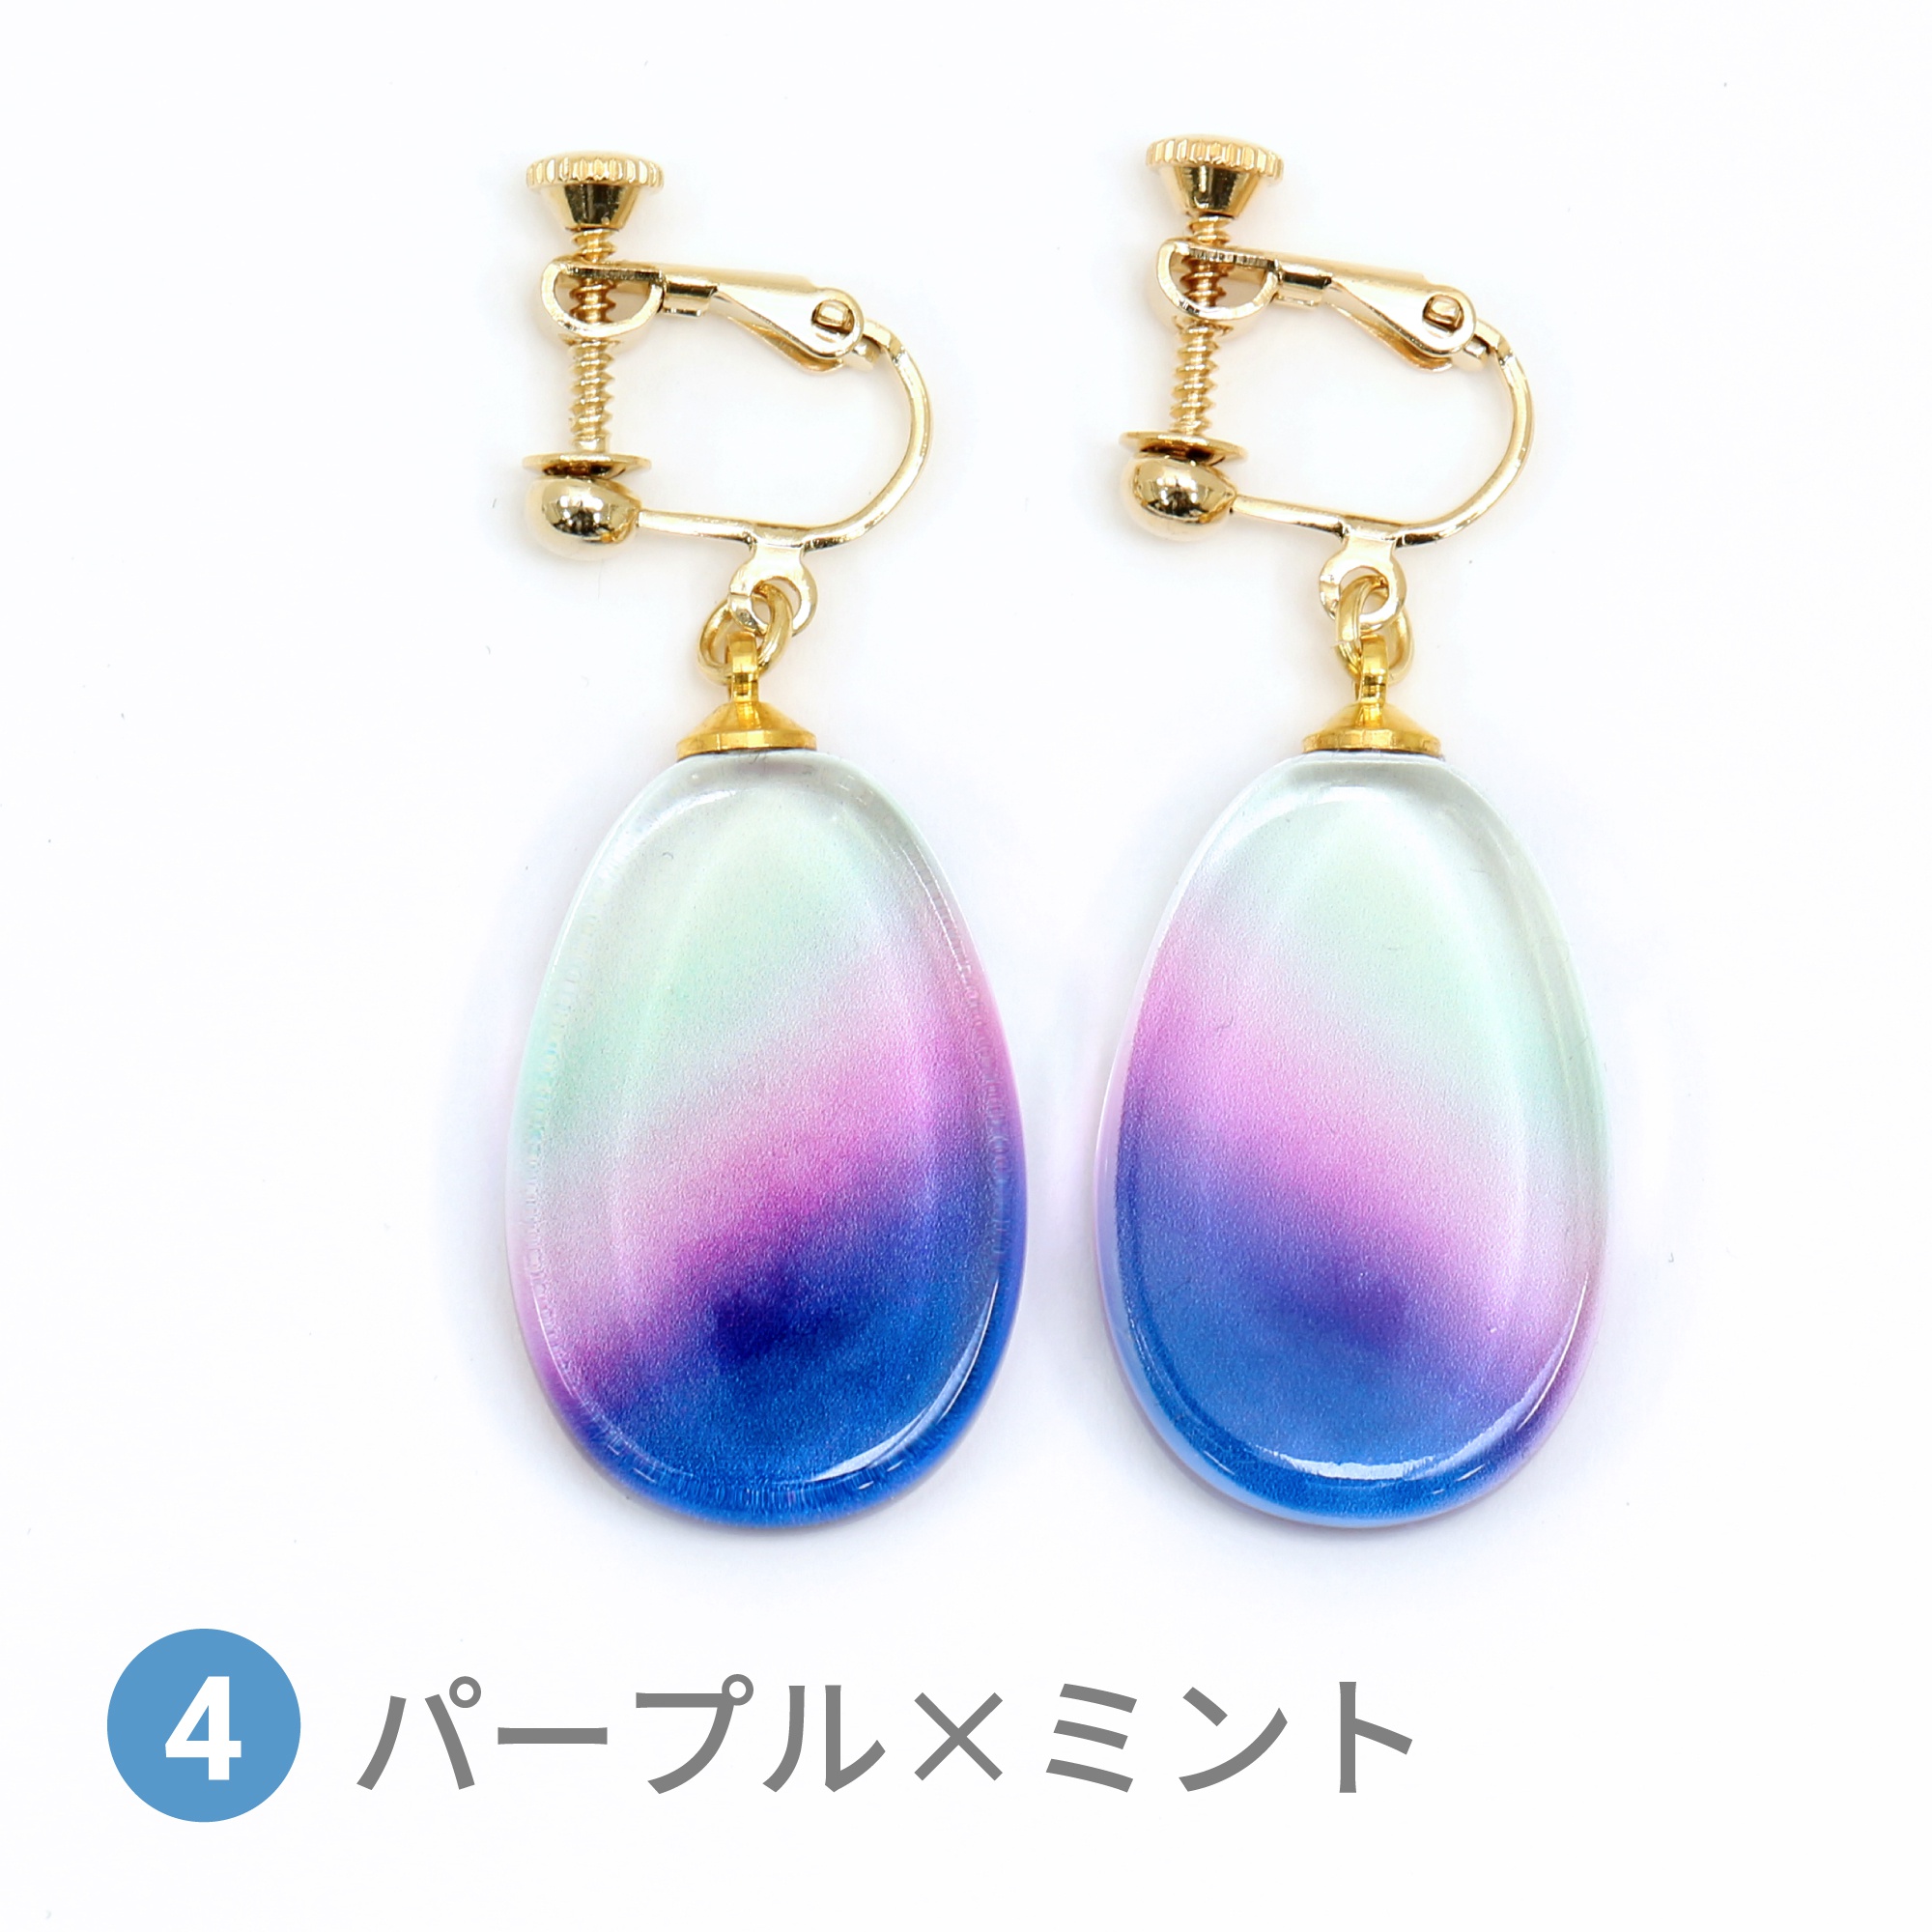 Glass accessories Earring AURORA purple&mint drop shape